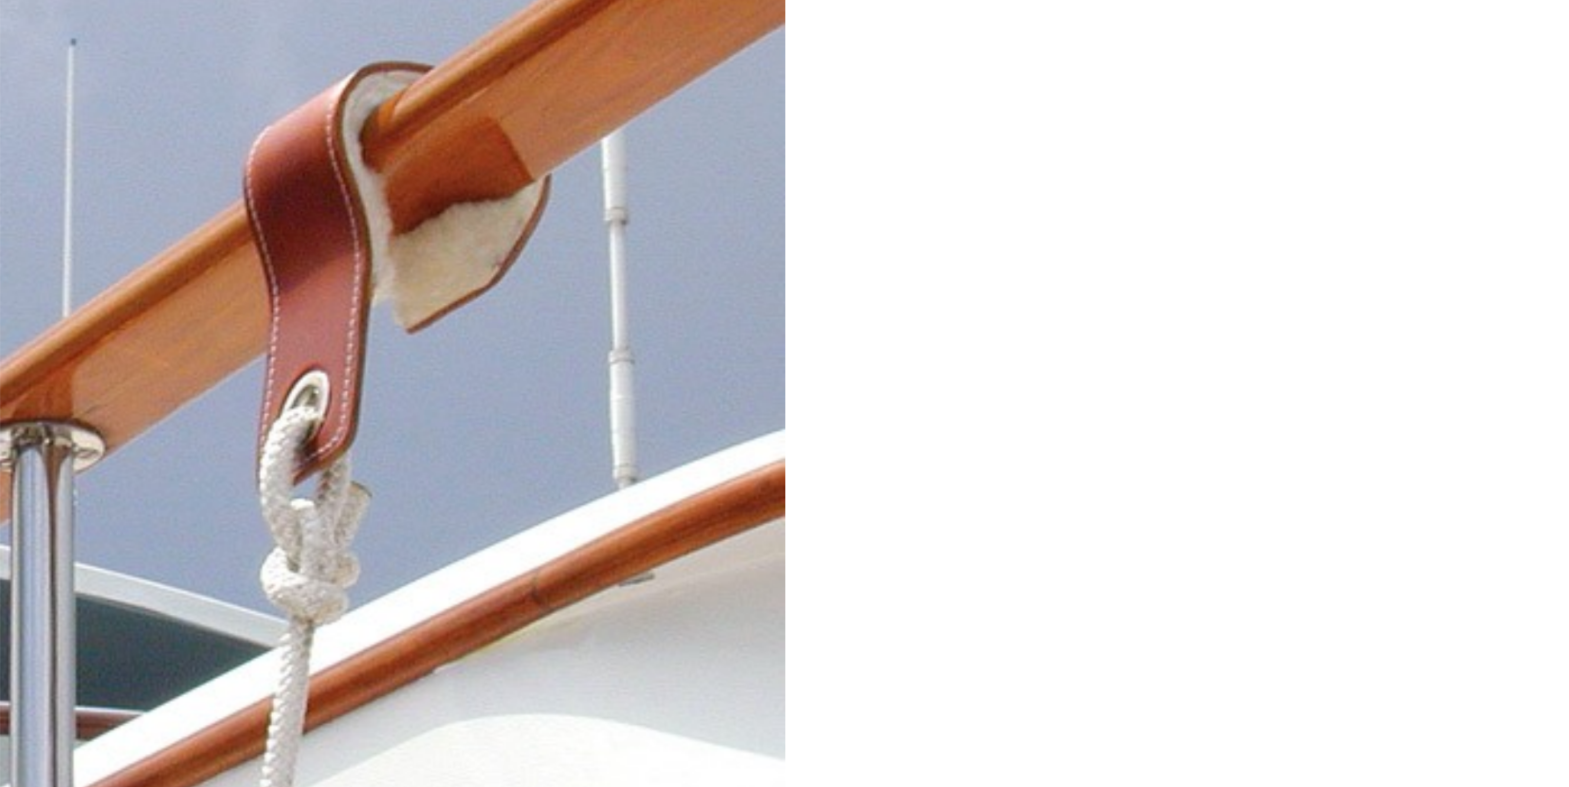 Handrail Boat Fender Hooks with Sheepskin